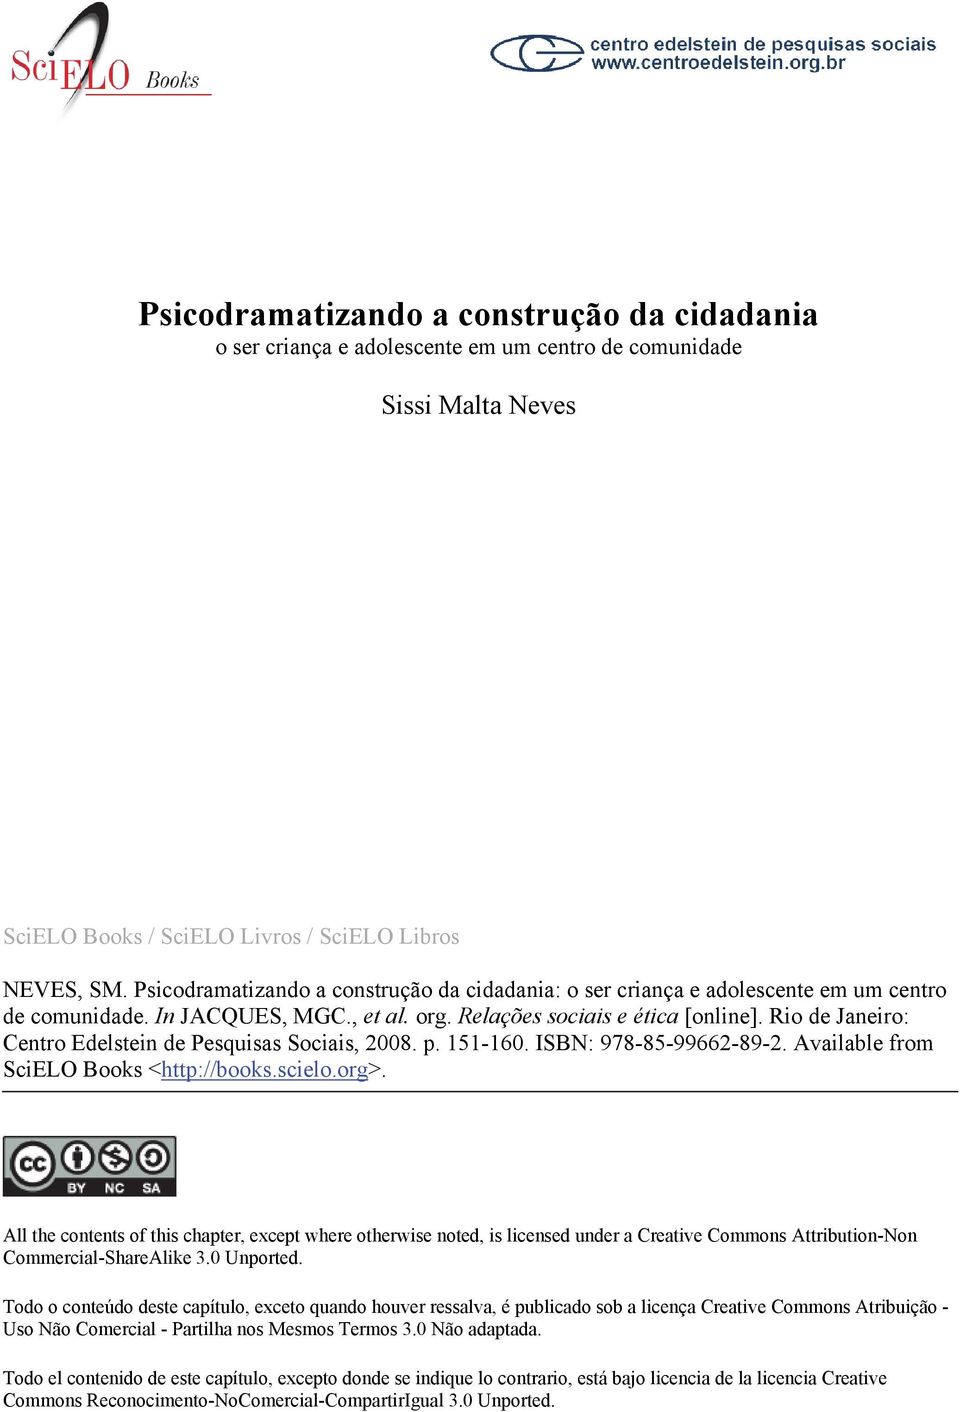 Rio de Janeiro: Centro Edelstein de Pesquisas Sociais, 2008. p. 151-160. ISBN: 978-85-99662-89-2. Available from SciELO Books <http://books.scielo.org>.